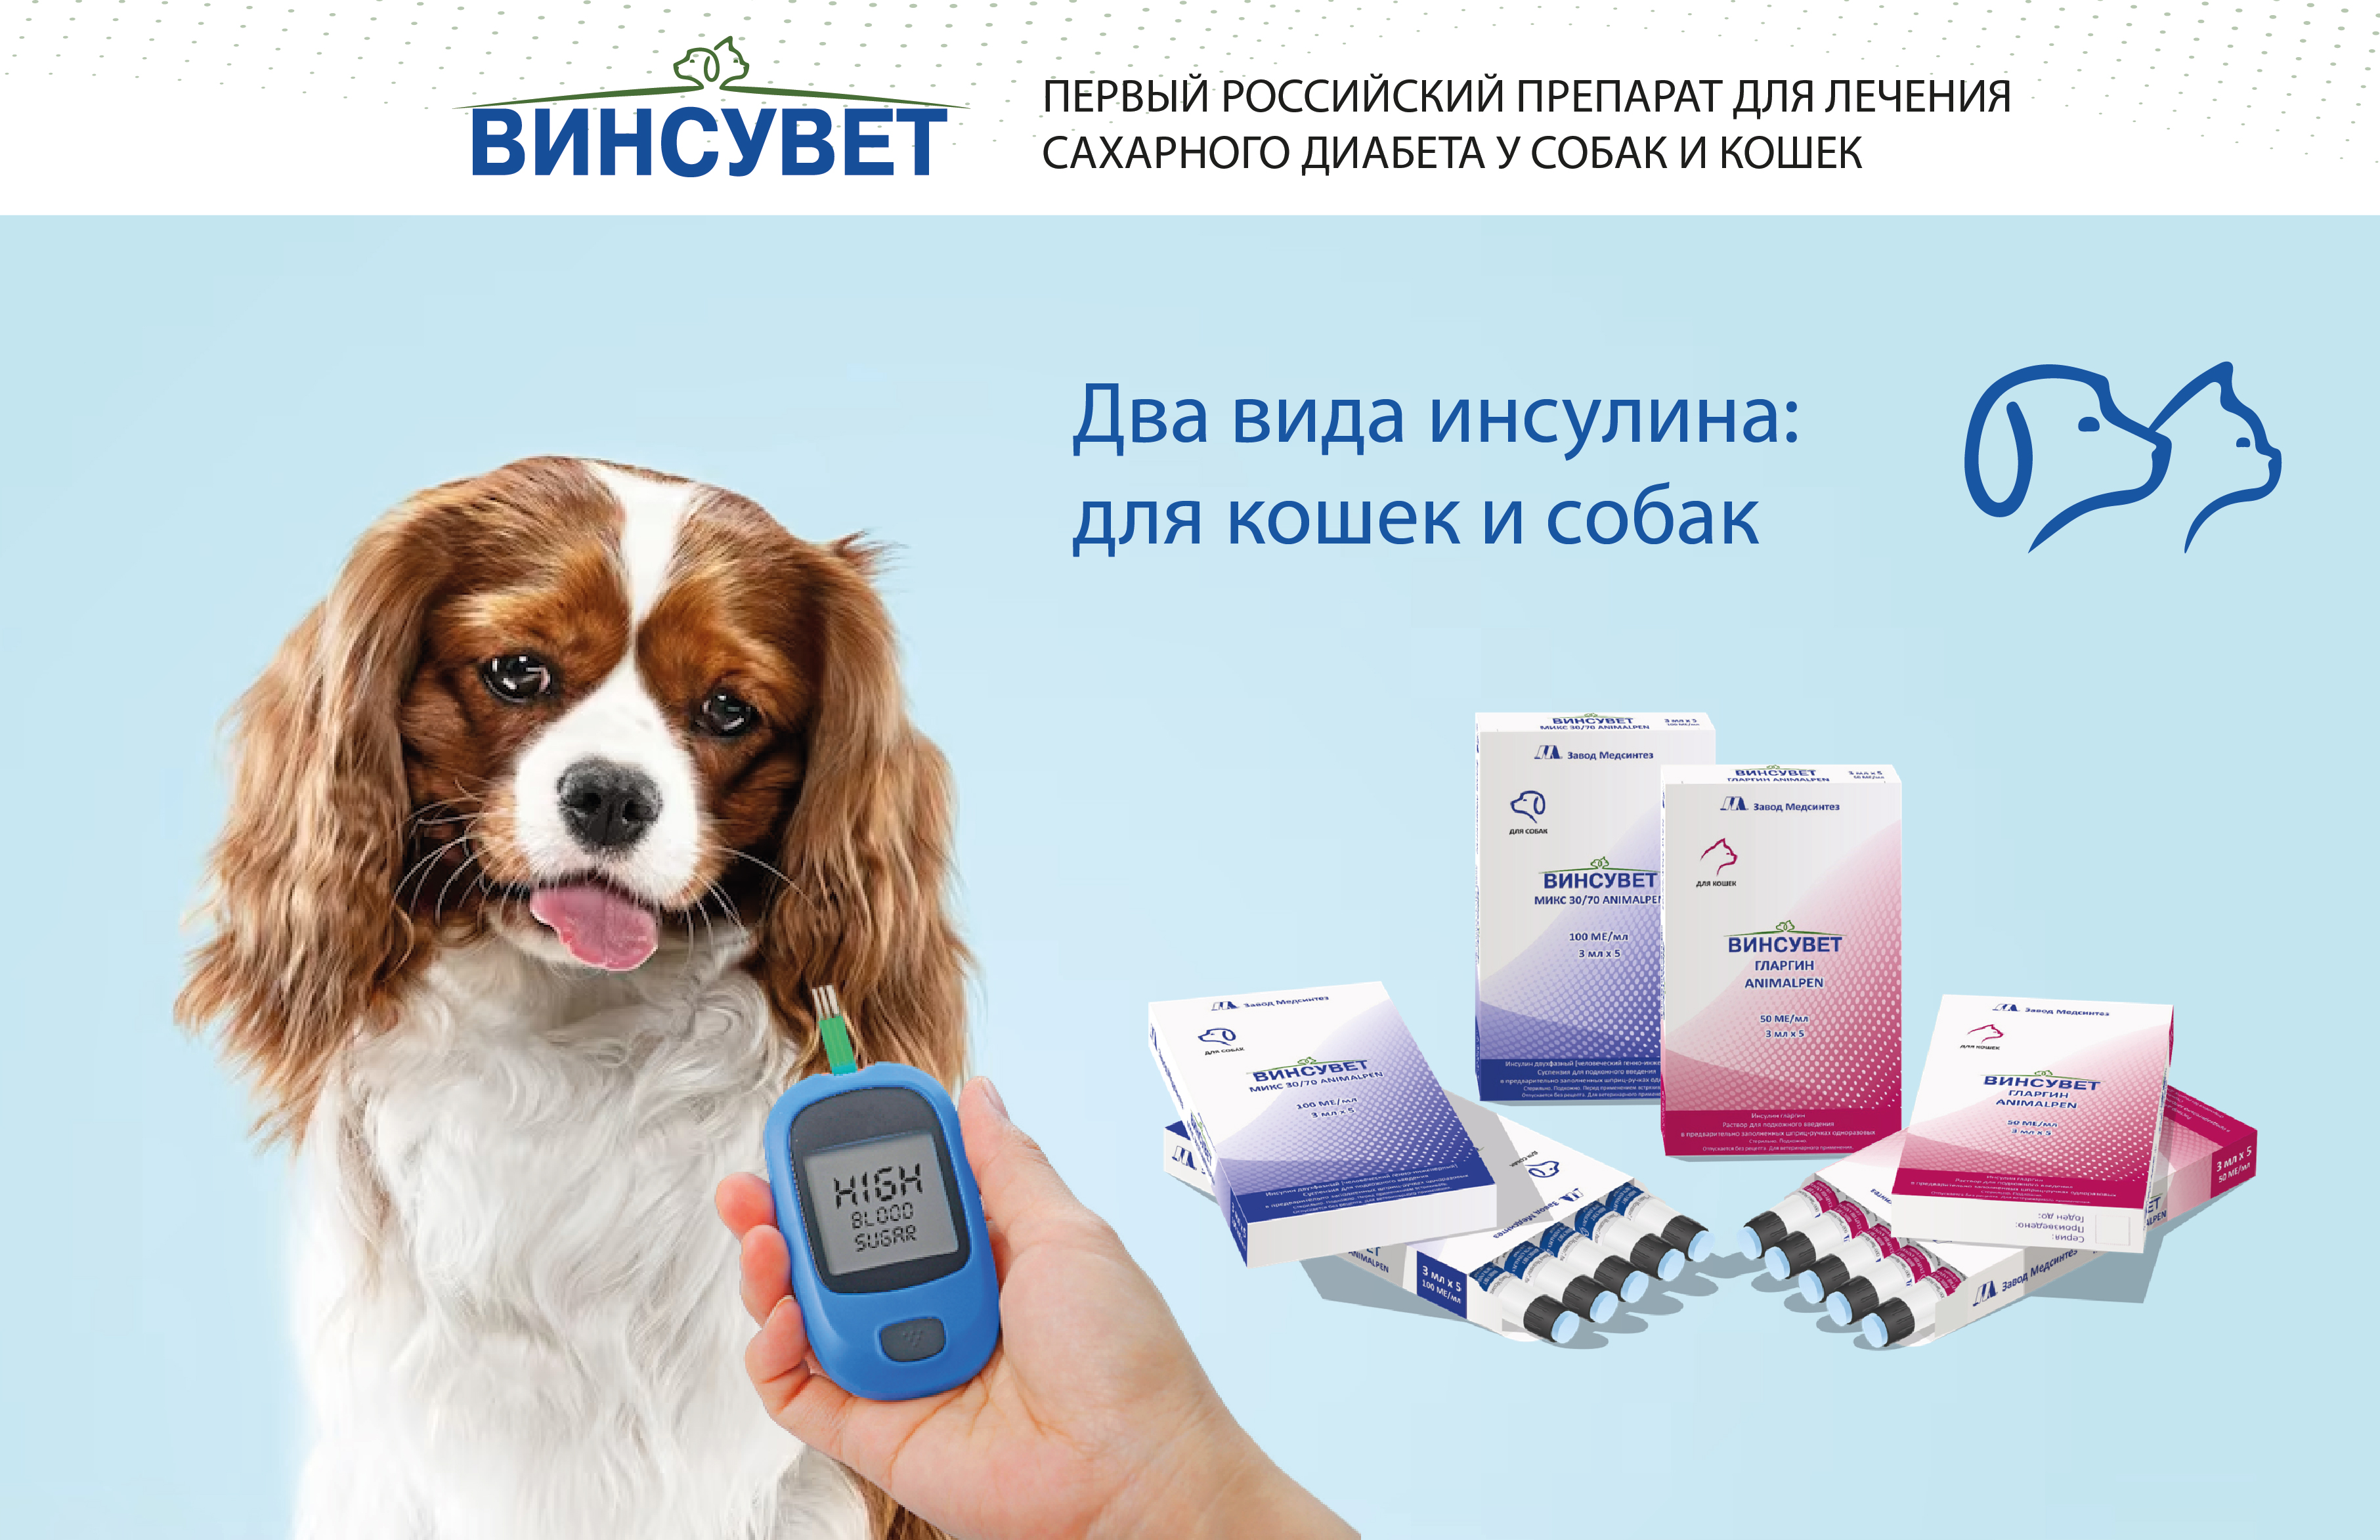 Первый российский препарат для лечения сахарного диабета у собак и кошек